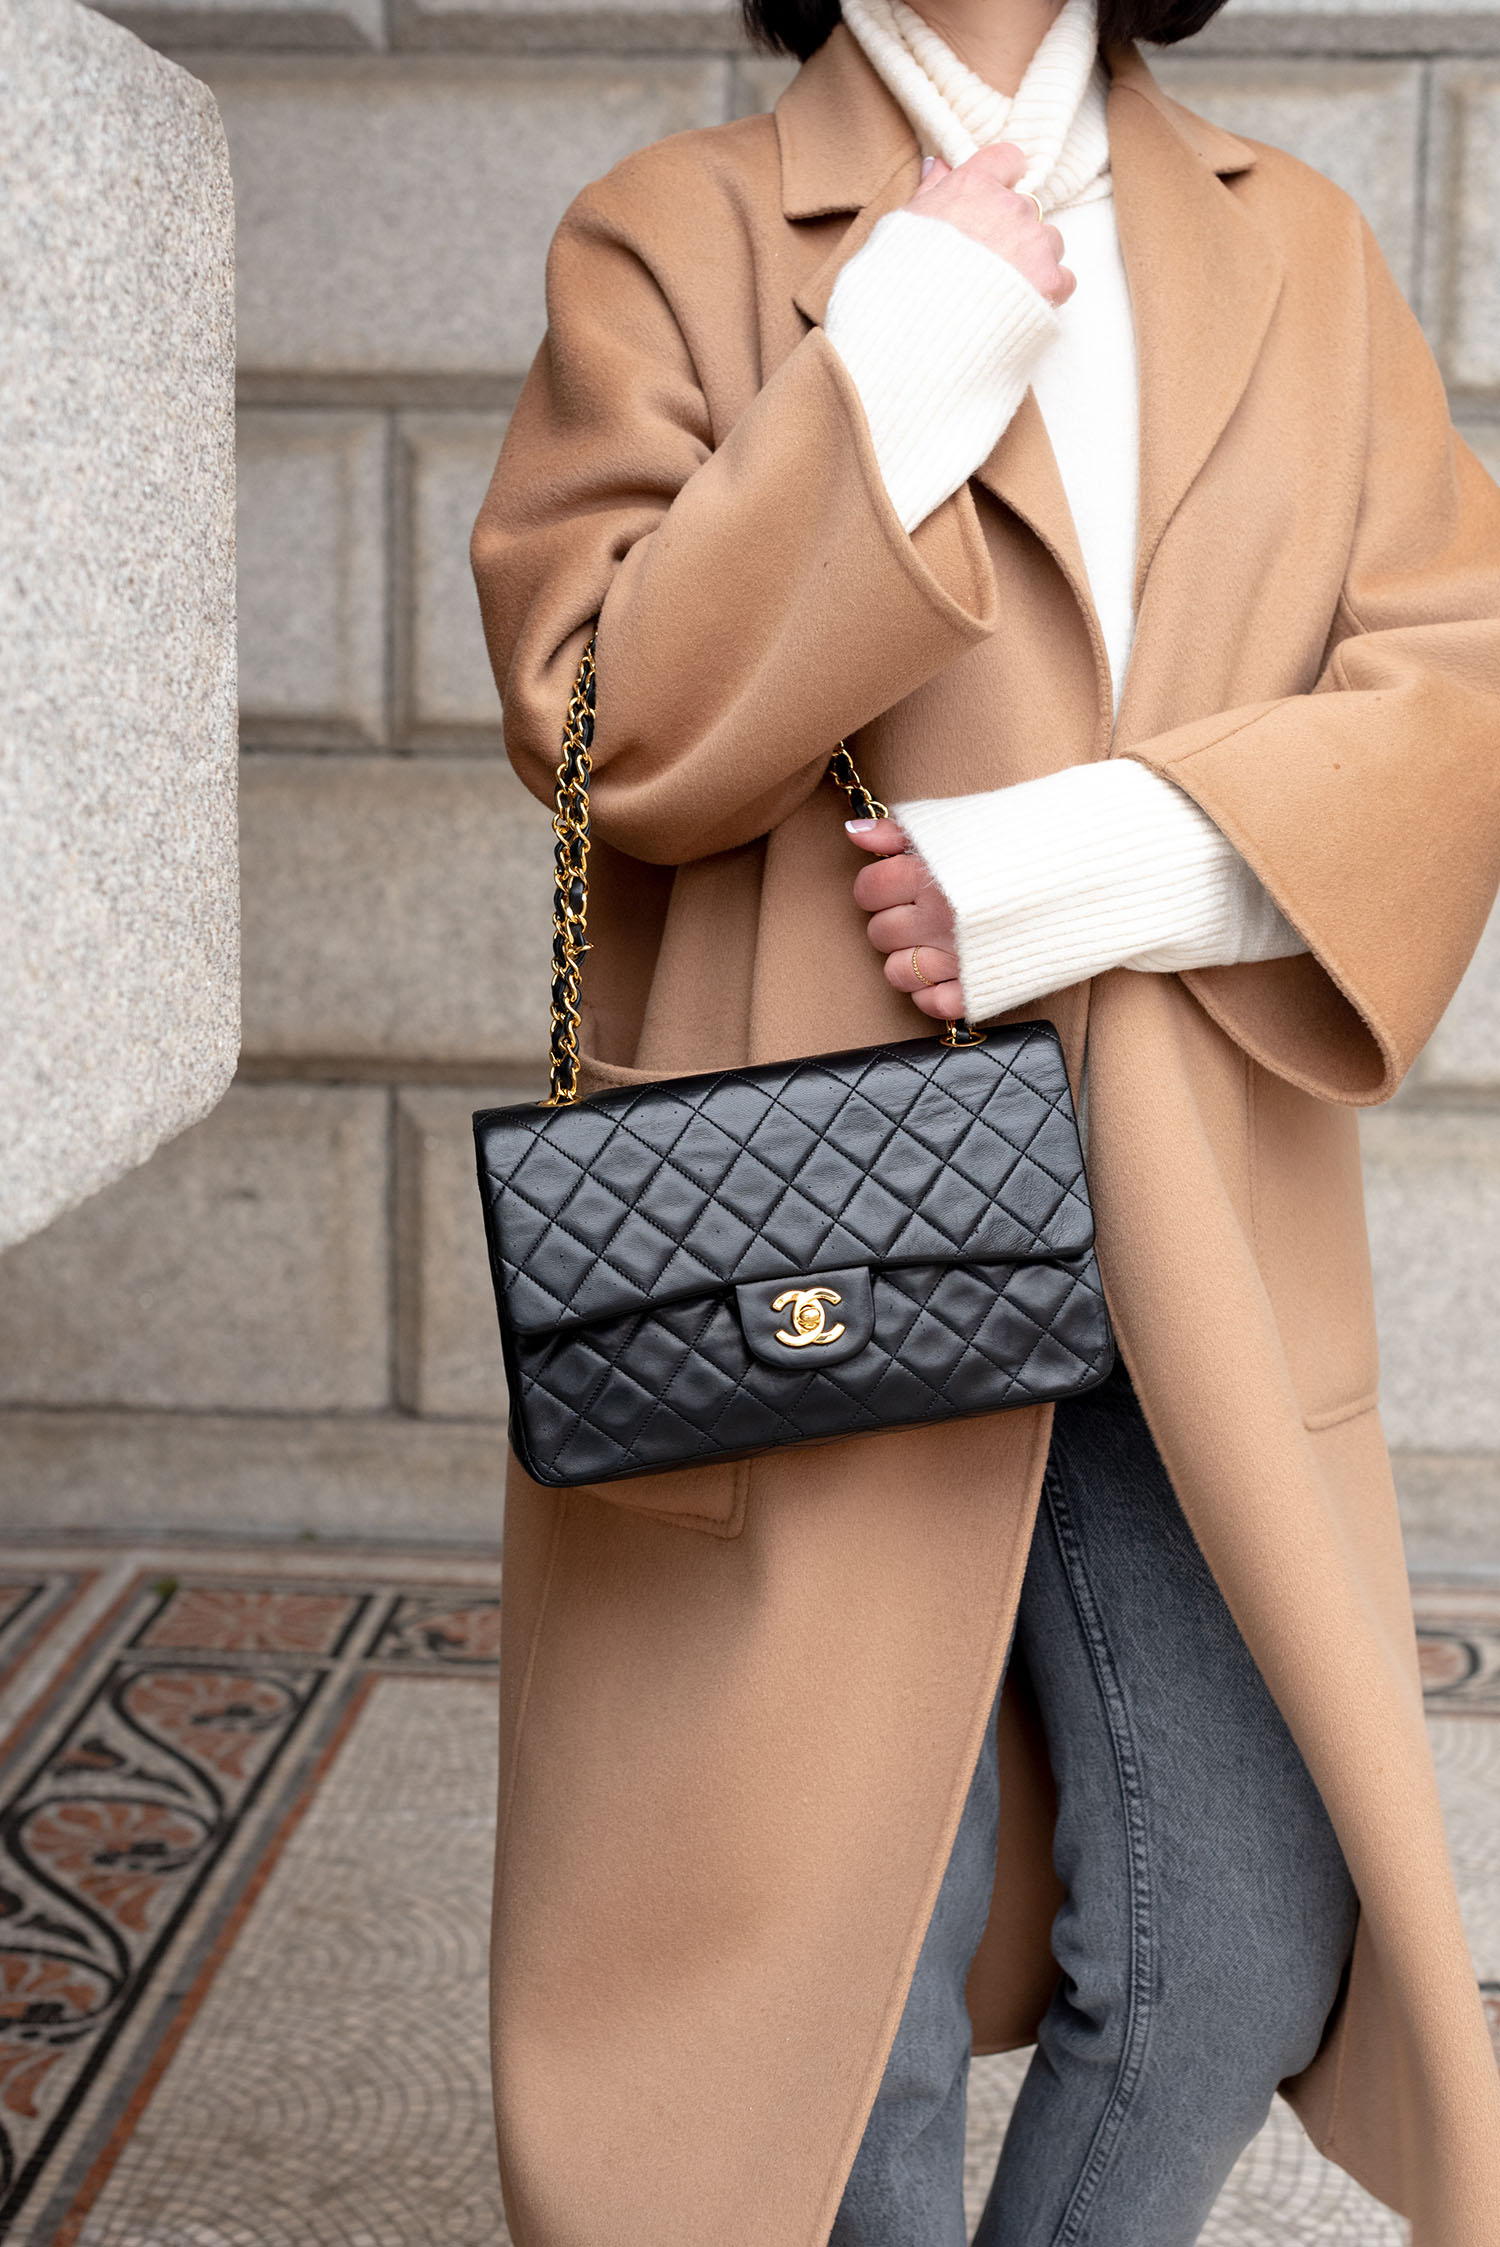 Coco & Vera - Vintage Chanel quilted handbag, Zara cream turtleneck, The Curated coat